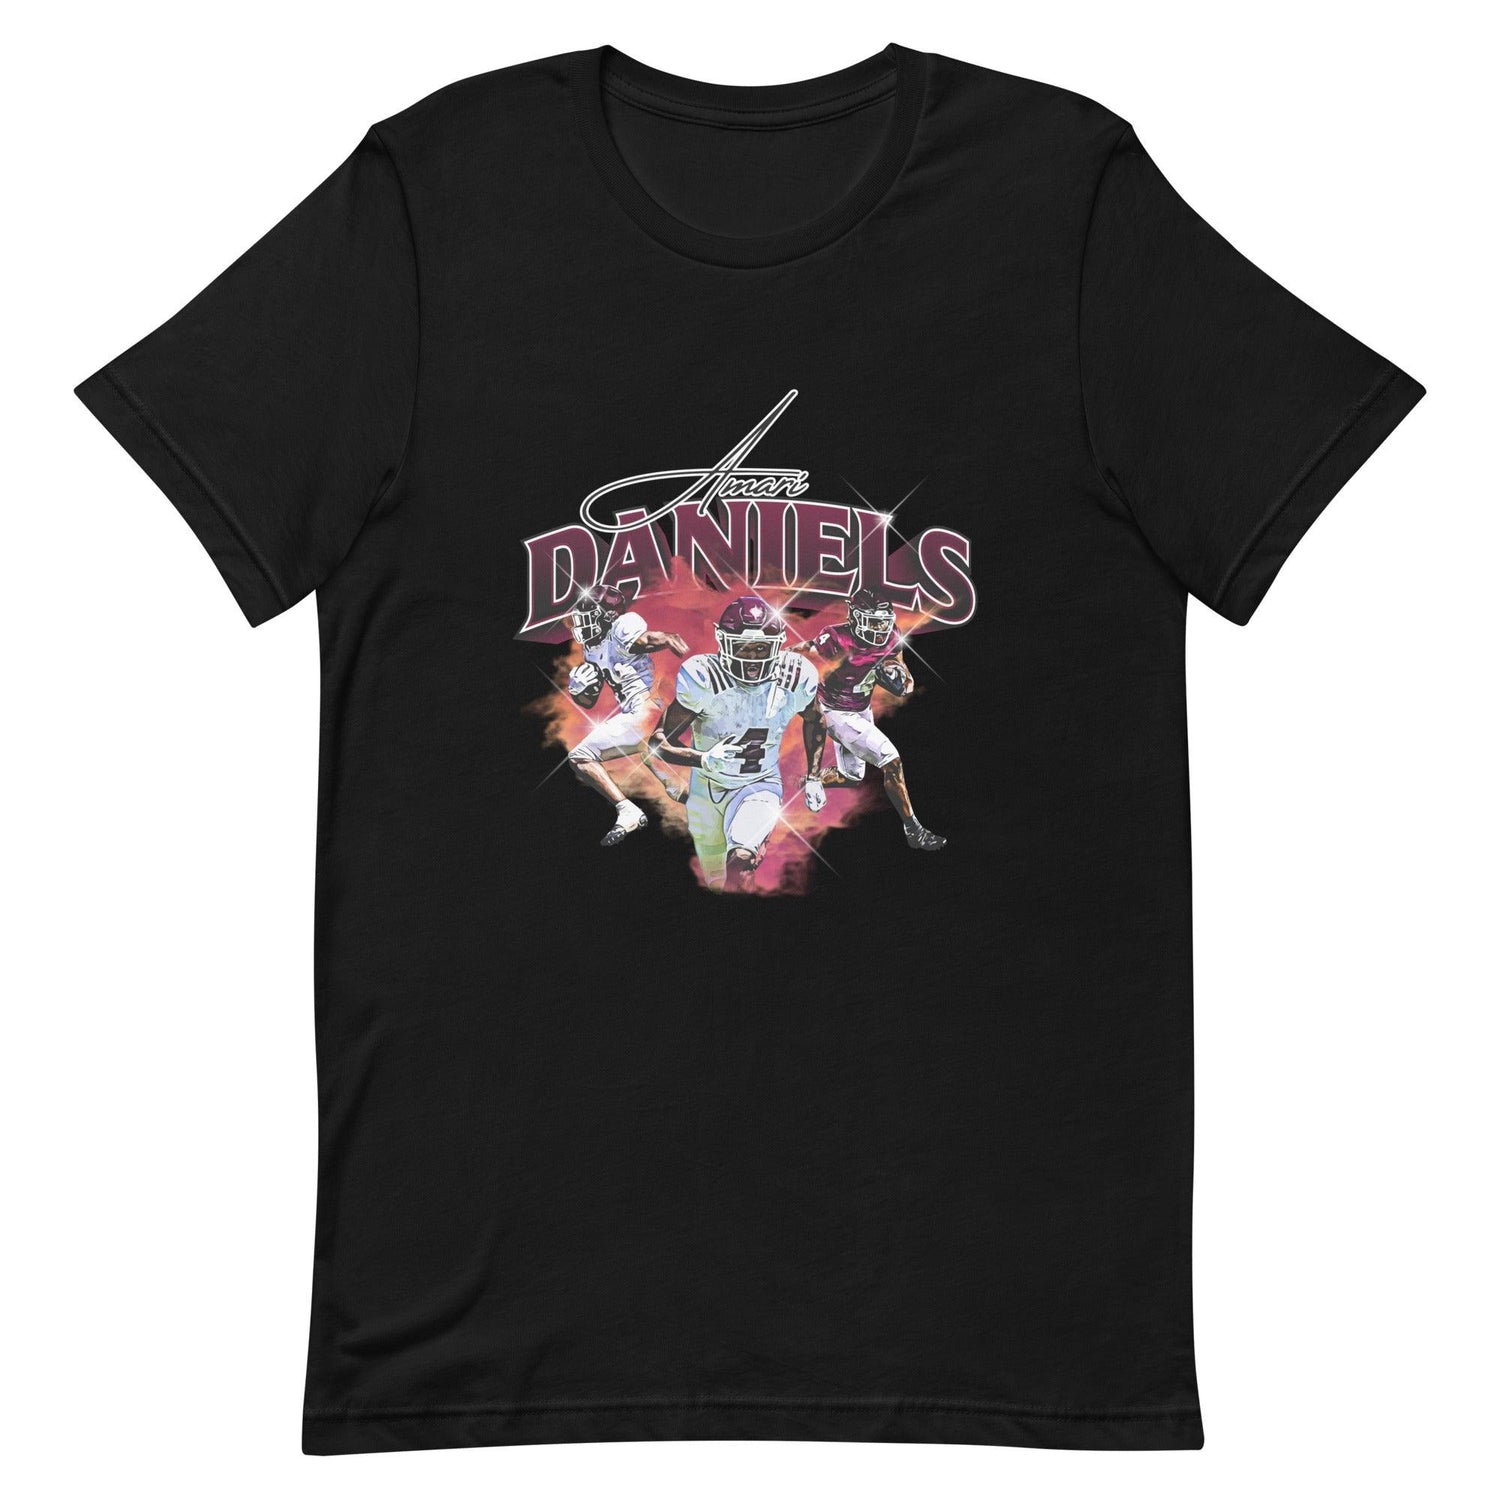 Amari Daniels "Legacy" t-shirt - Fan Arch